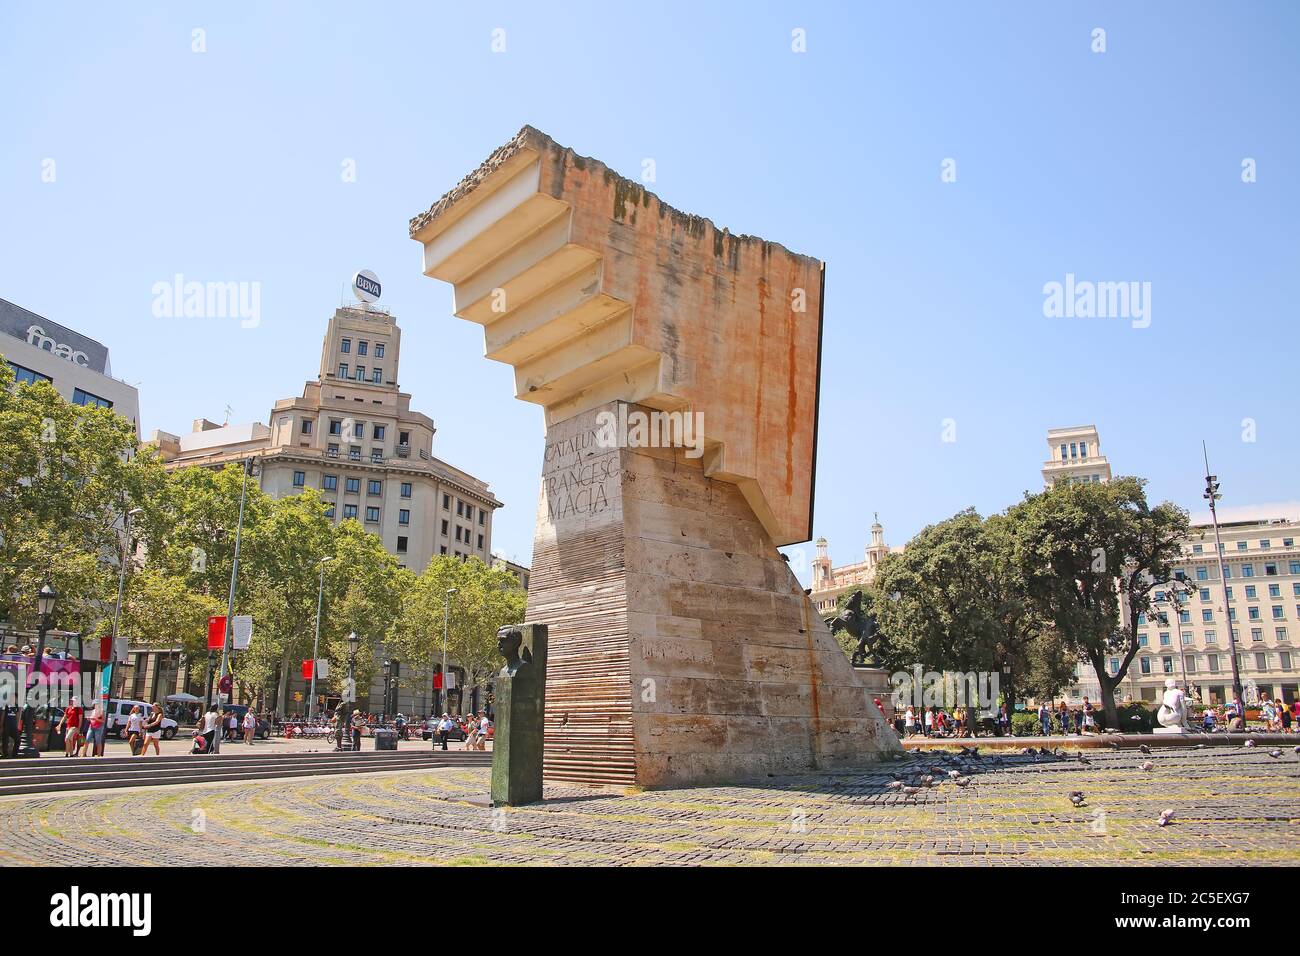 Schöne Skulptur im Zentrum der Stadt in der Innenstadt, Placa de Catalunya oder Katalonien-Platz, Barcelona, Spanien. Stockfoto